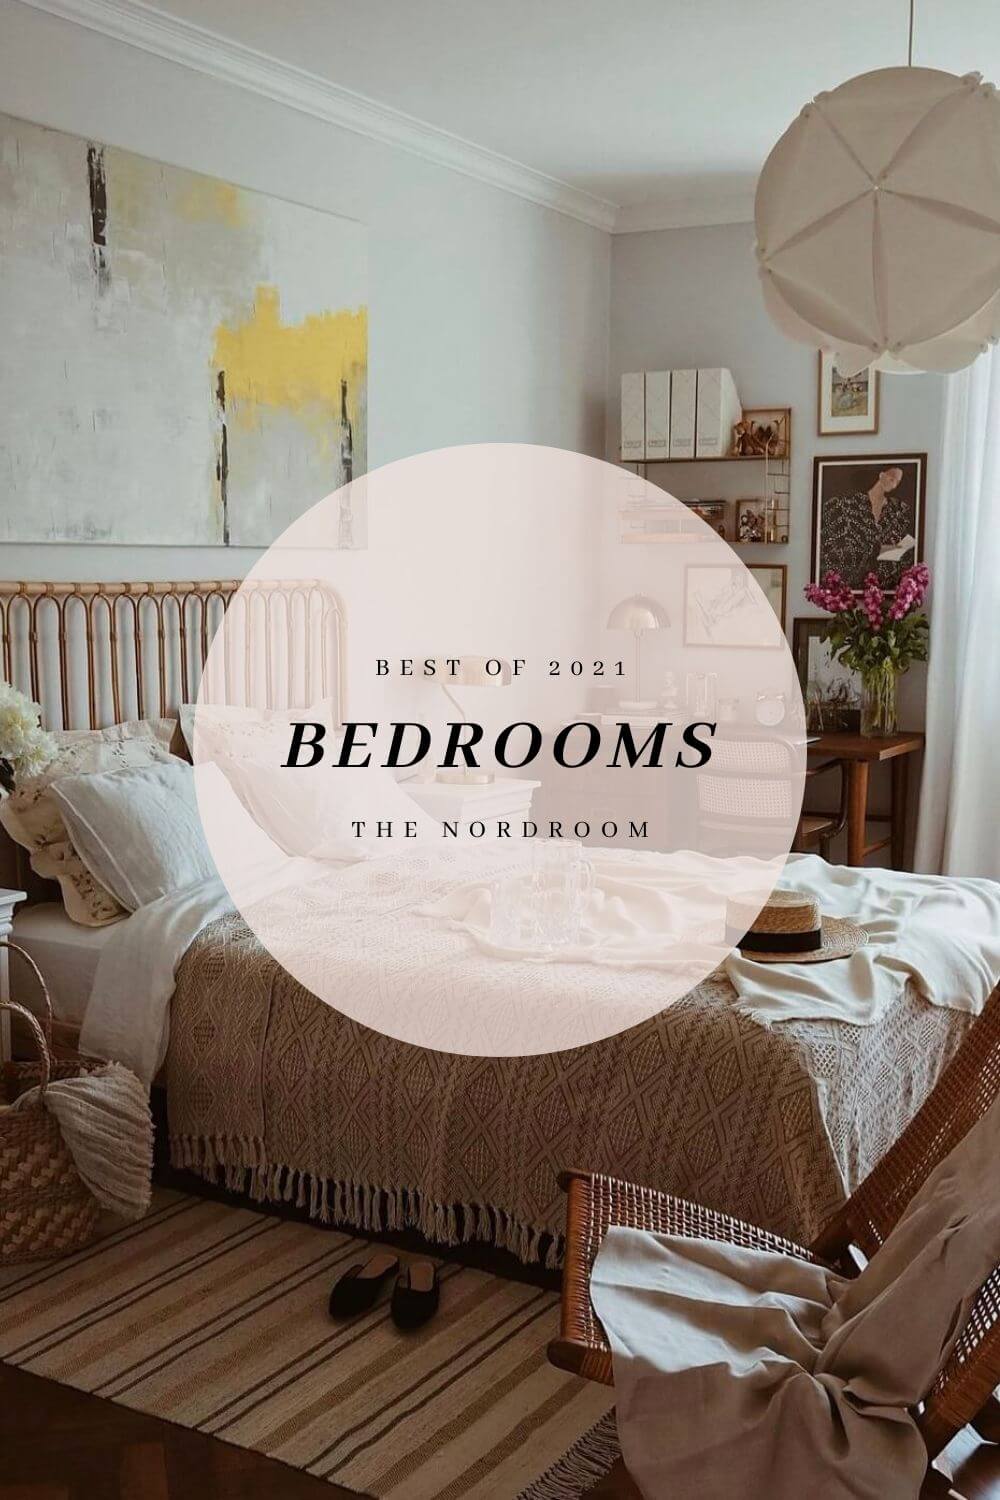 Best of 2021: Bedrooms